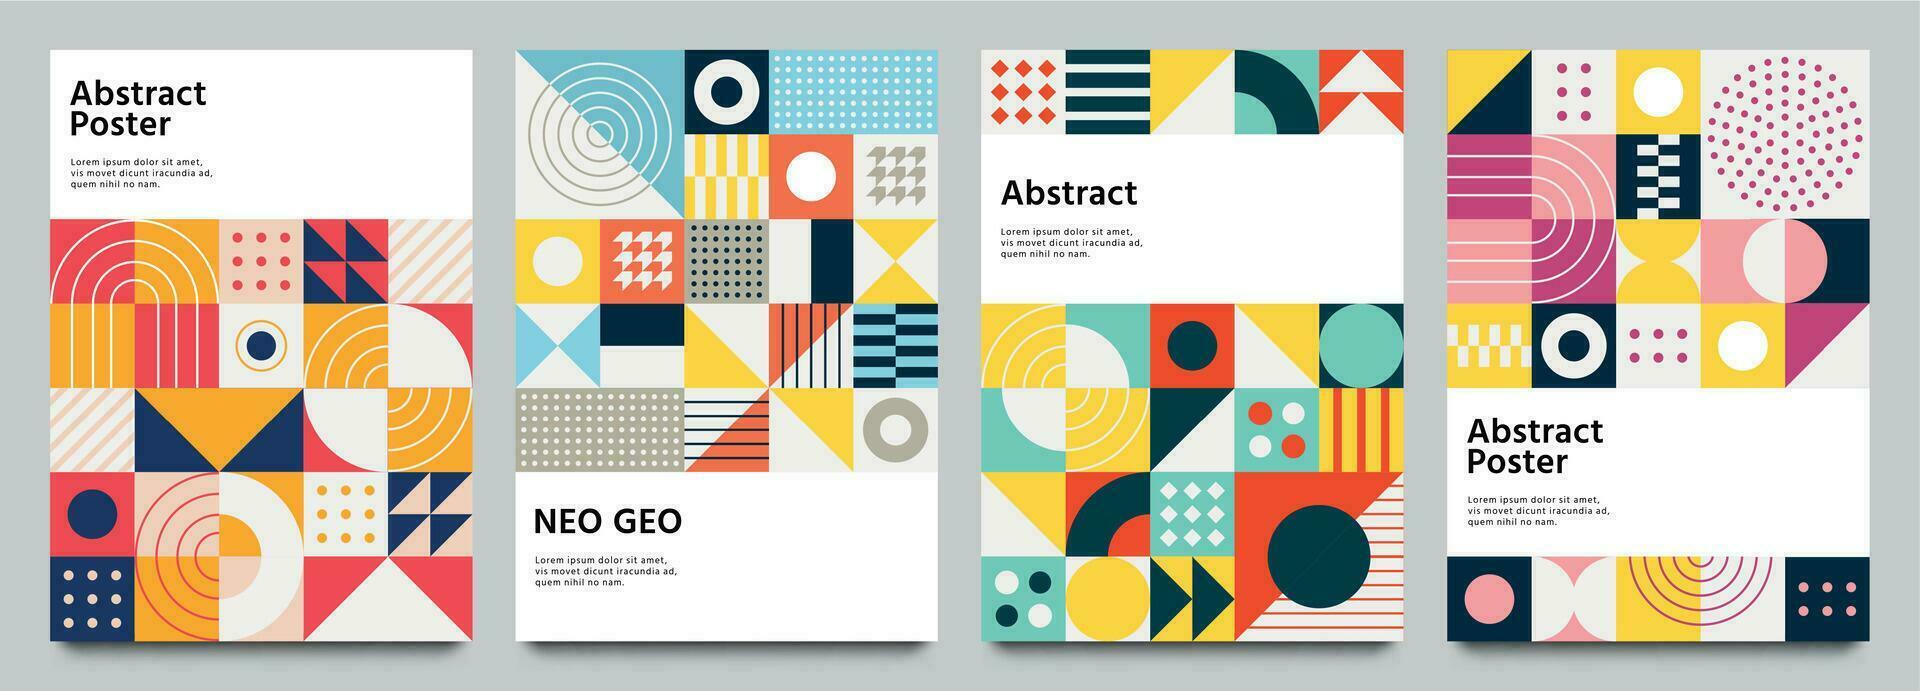 Farbe Neo geo Poster. modern Gitter Flyer mit geometrisch Formen, Geometrie Grafik und abstrakt Hintergrund Vektor einstellen